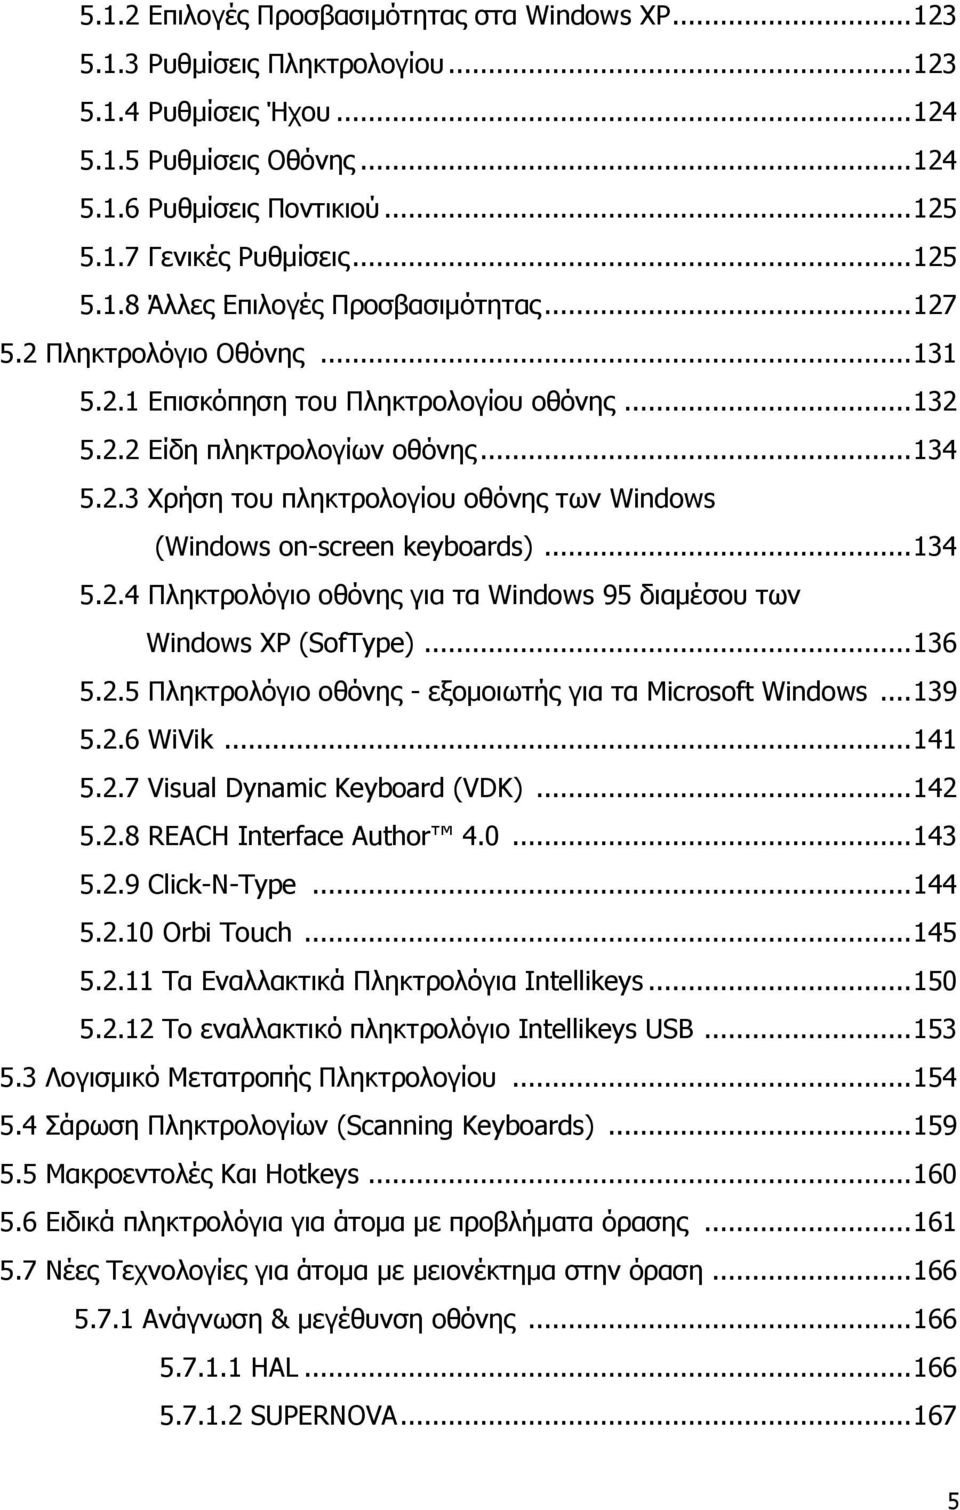 .. 134 5.2.4 Πληκτρολόγιο οθόνης για τα Windows 95 διαμέσου των Windows XP (SofType)... 136 5.2.5 Πληκτρολόγιο οθόνης - εξομοιωτής για τα Microsoft Windows... 139 5.2.6 WiVik... 141 5.2.7 Visual Dynamic Keyboard (VDK).